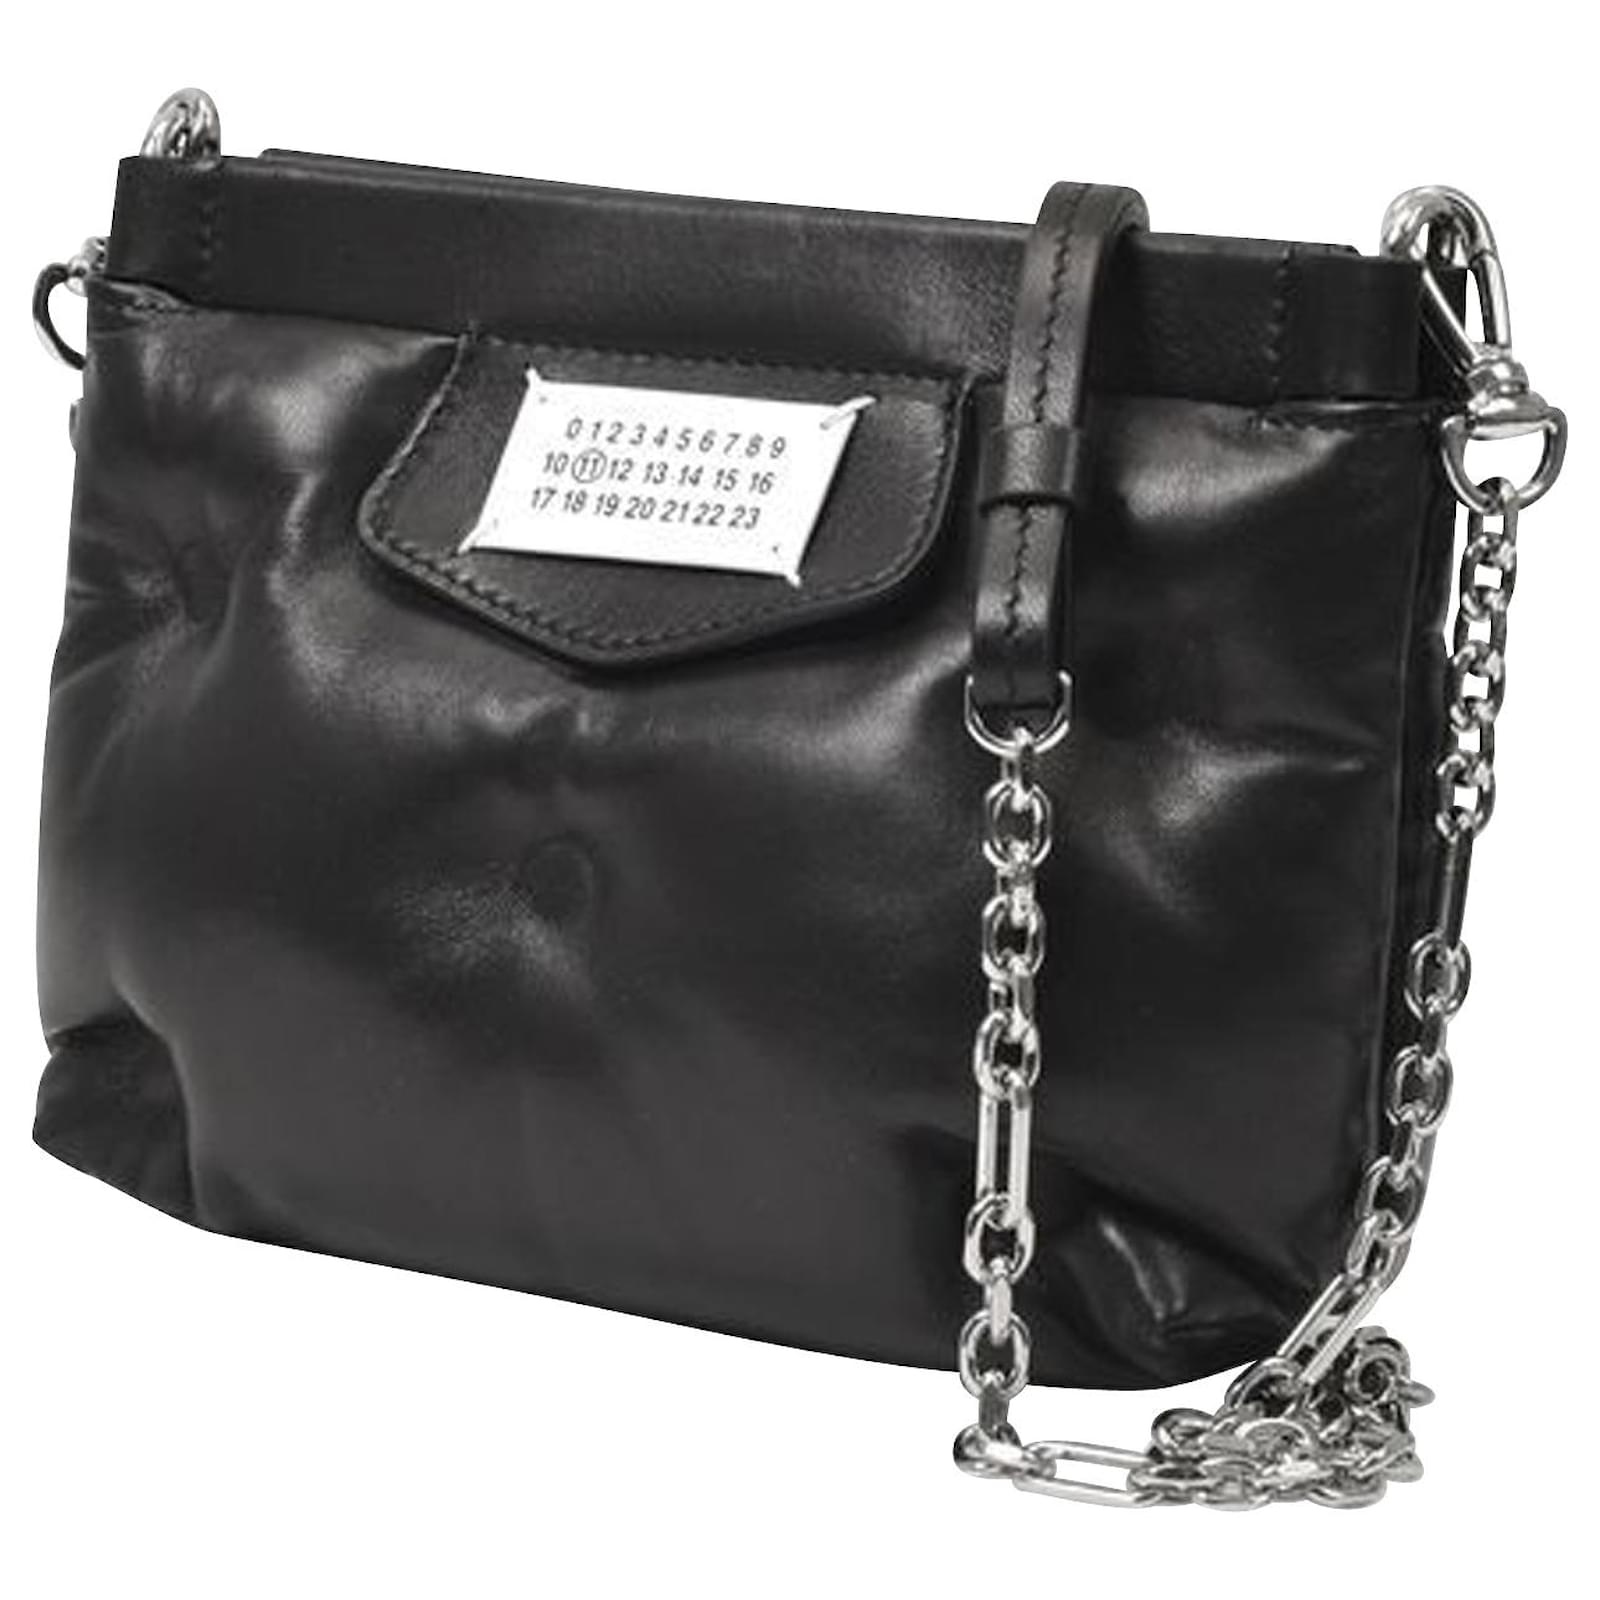 Maison Margiela Glam Slam - Shoulder bag for Woman - Black